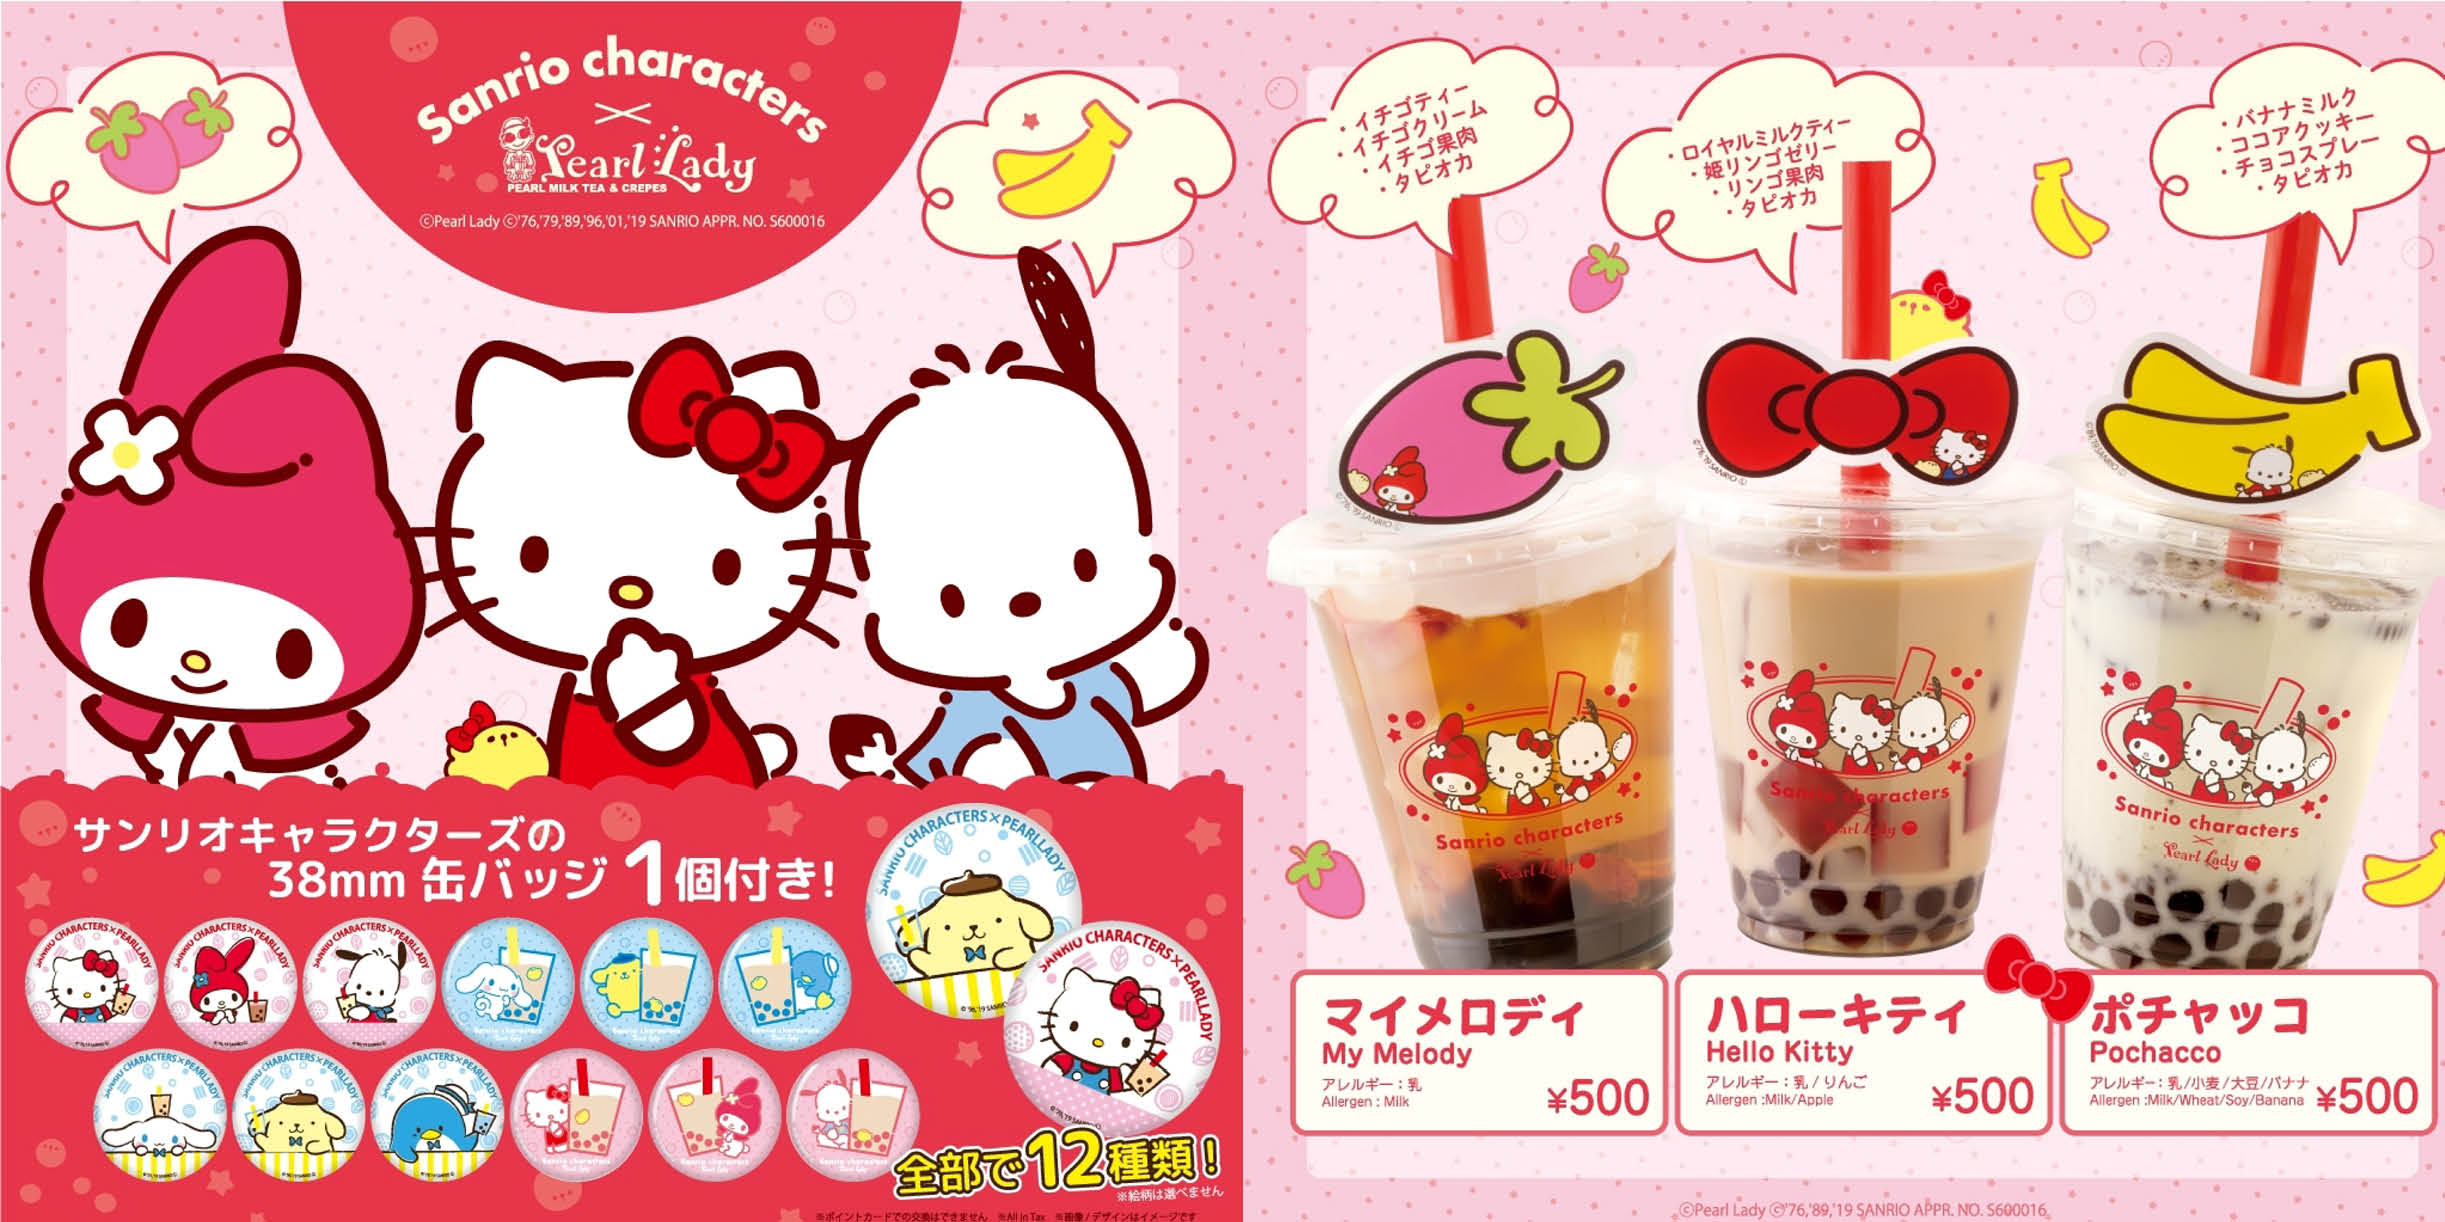 ハローキティ マイメロディ ポチャッコ hello kitty my melody pochakko sanrio characters pearl lady コラボタピオカドリンク　collaboration tapioka drink sub4